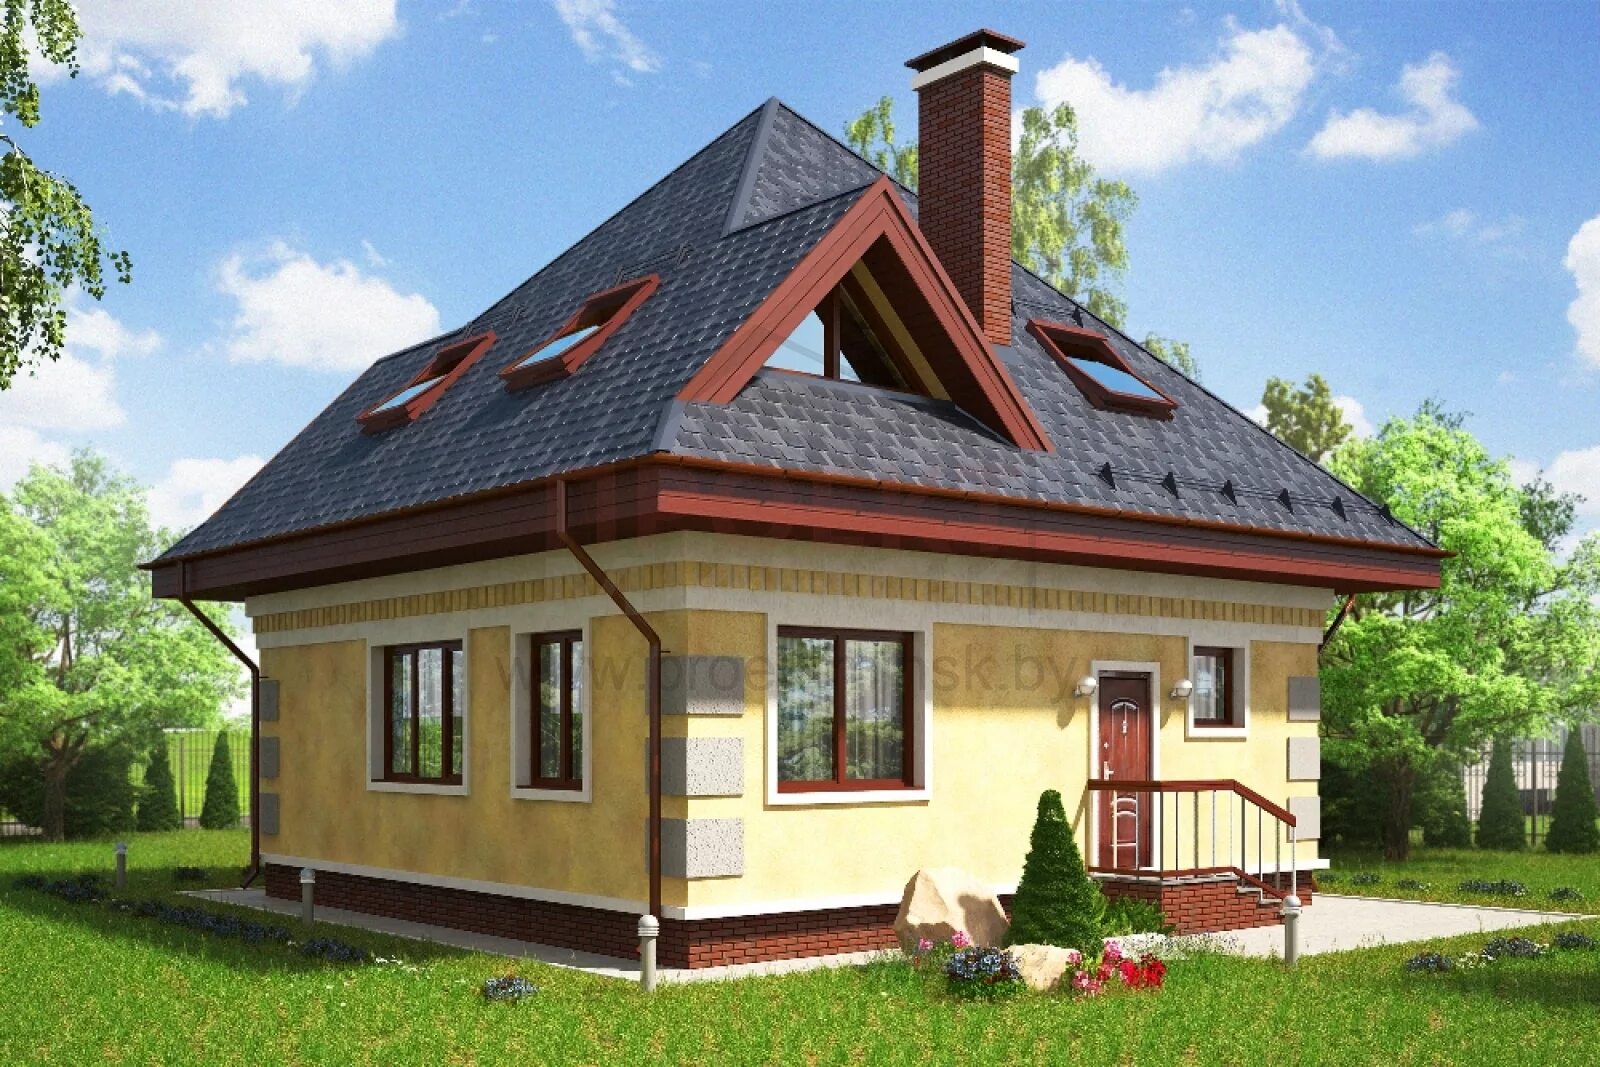 Дом с крышей на 4 стороны